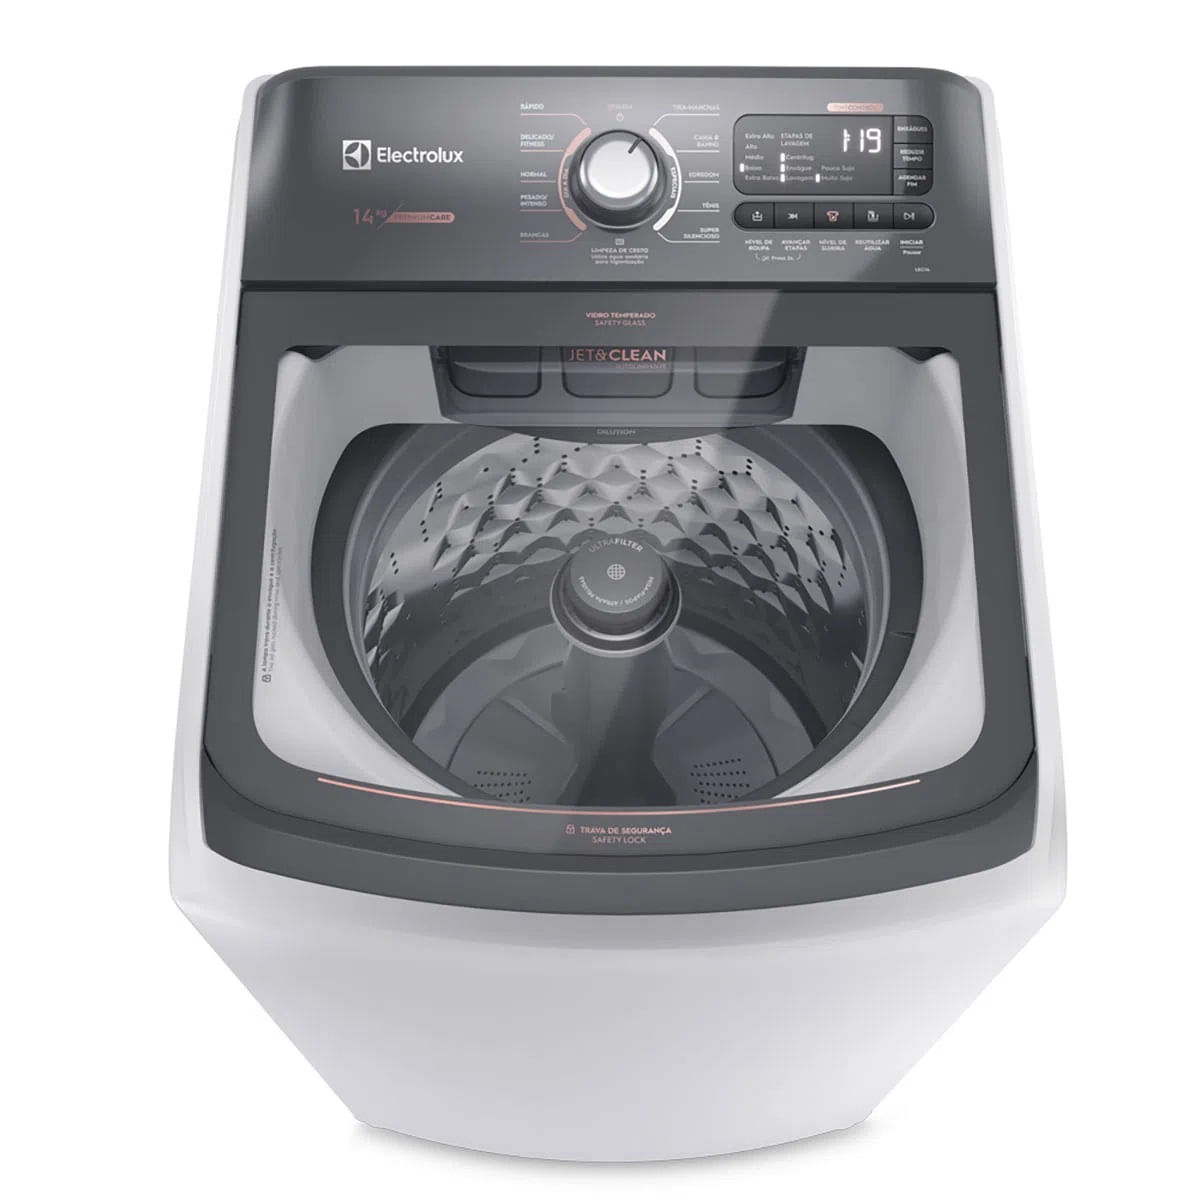 maquina-de-lavar-14kg-electrolux-premium-care-com-cesto-inox-jet-clean-e-time-control-lec14-127v-2.jpg